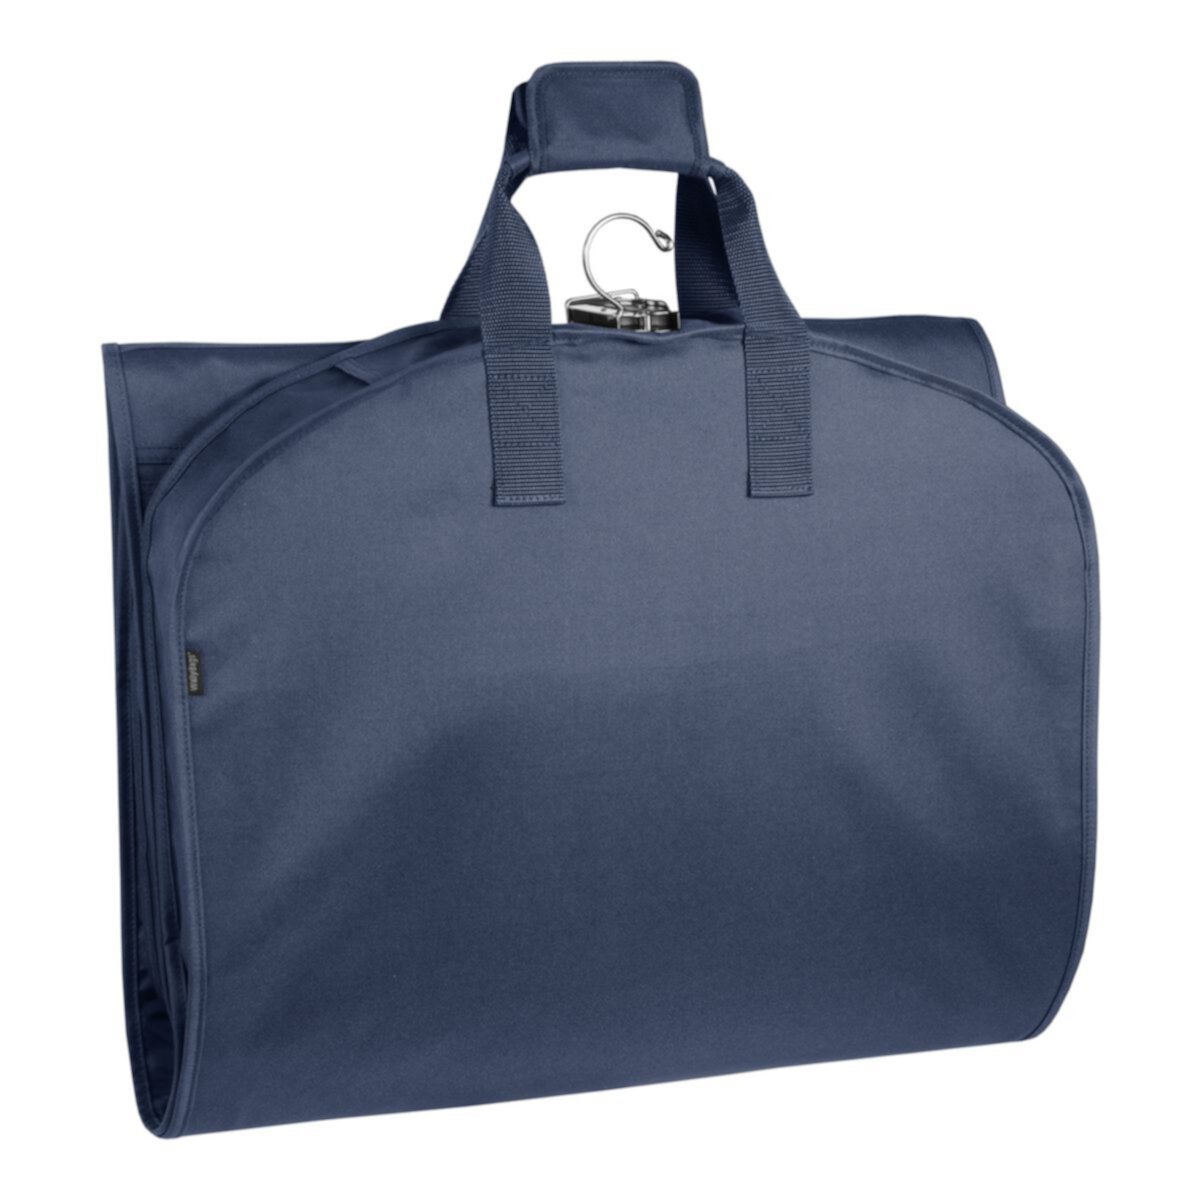 60-дюймовая дорожная сумка для одежды премиум-класса WallyBags, складываемая втрое, с карманом WallyBags